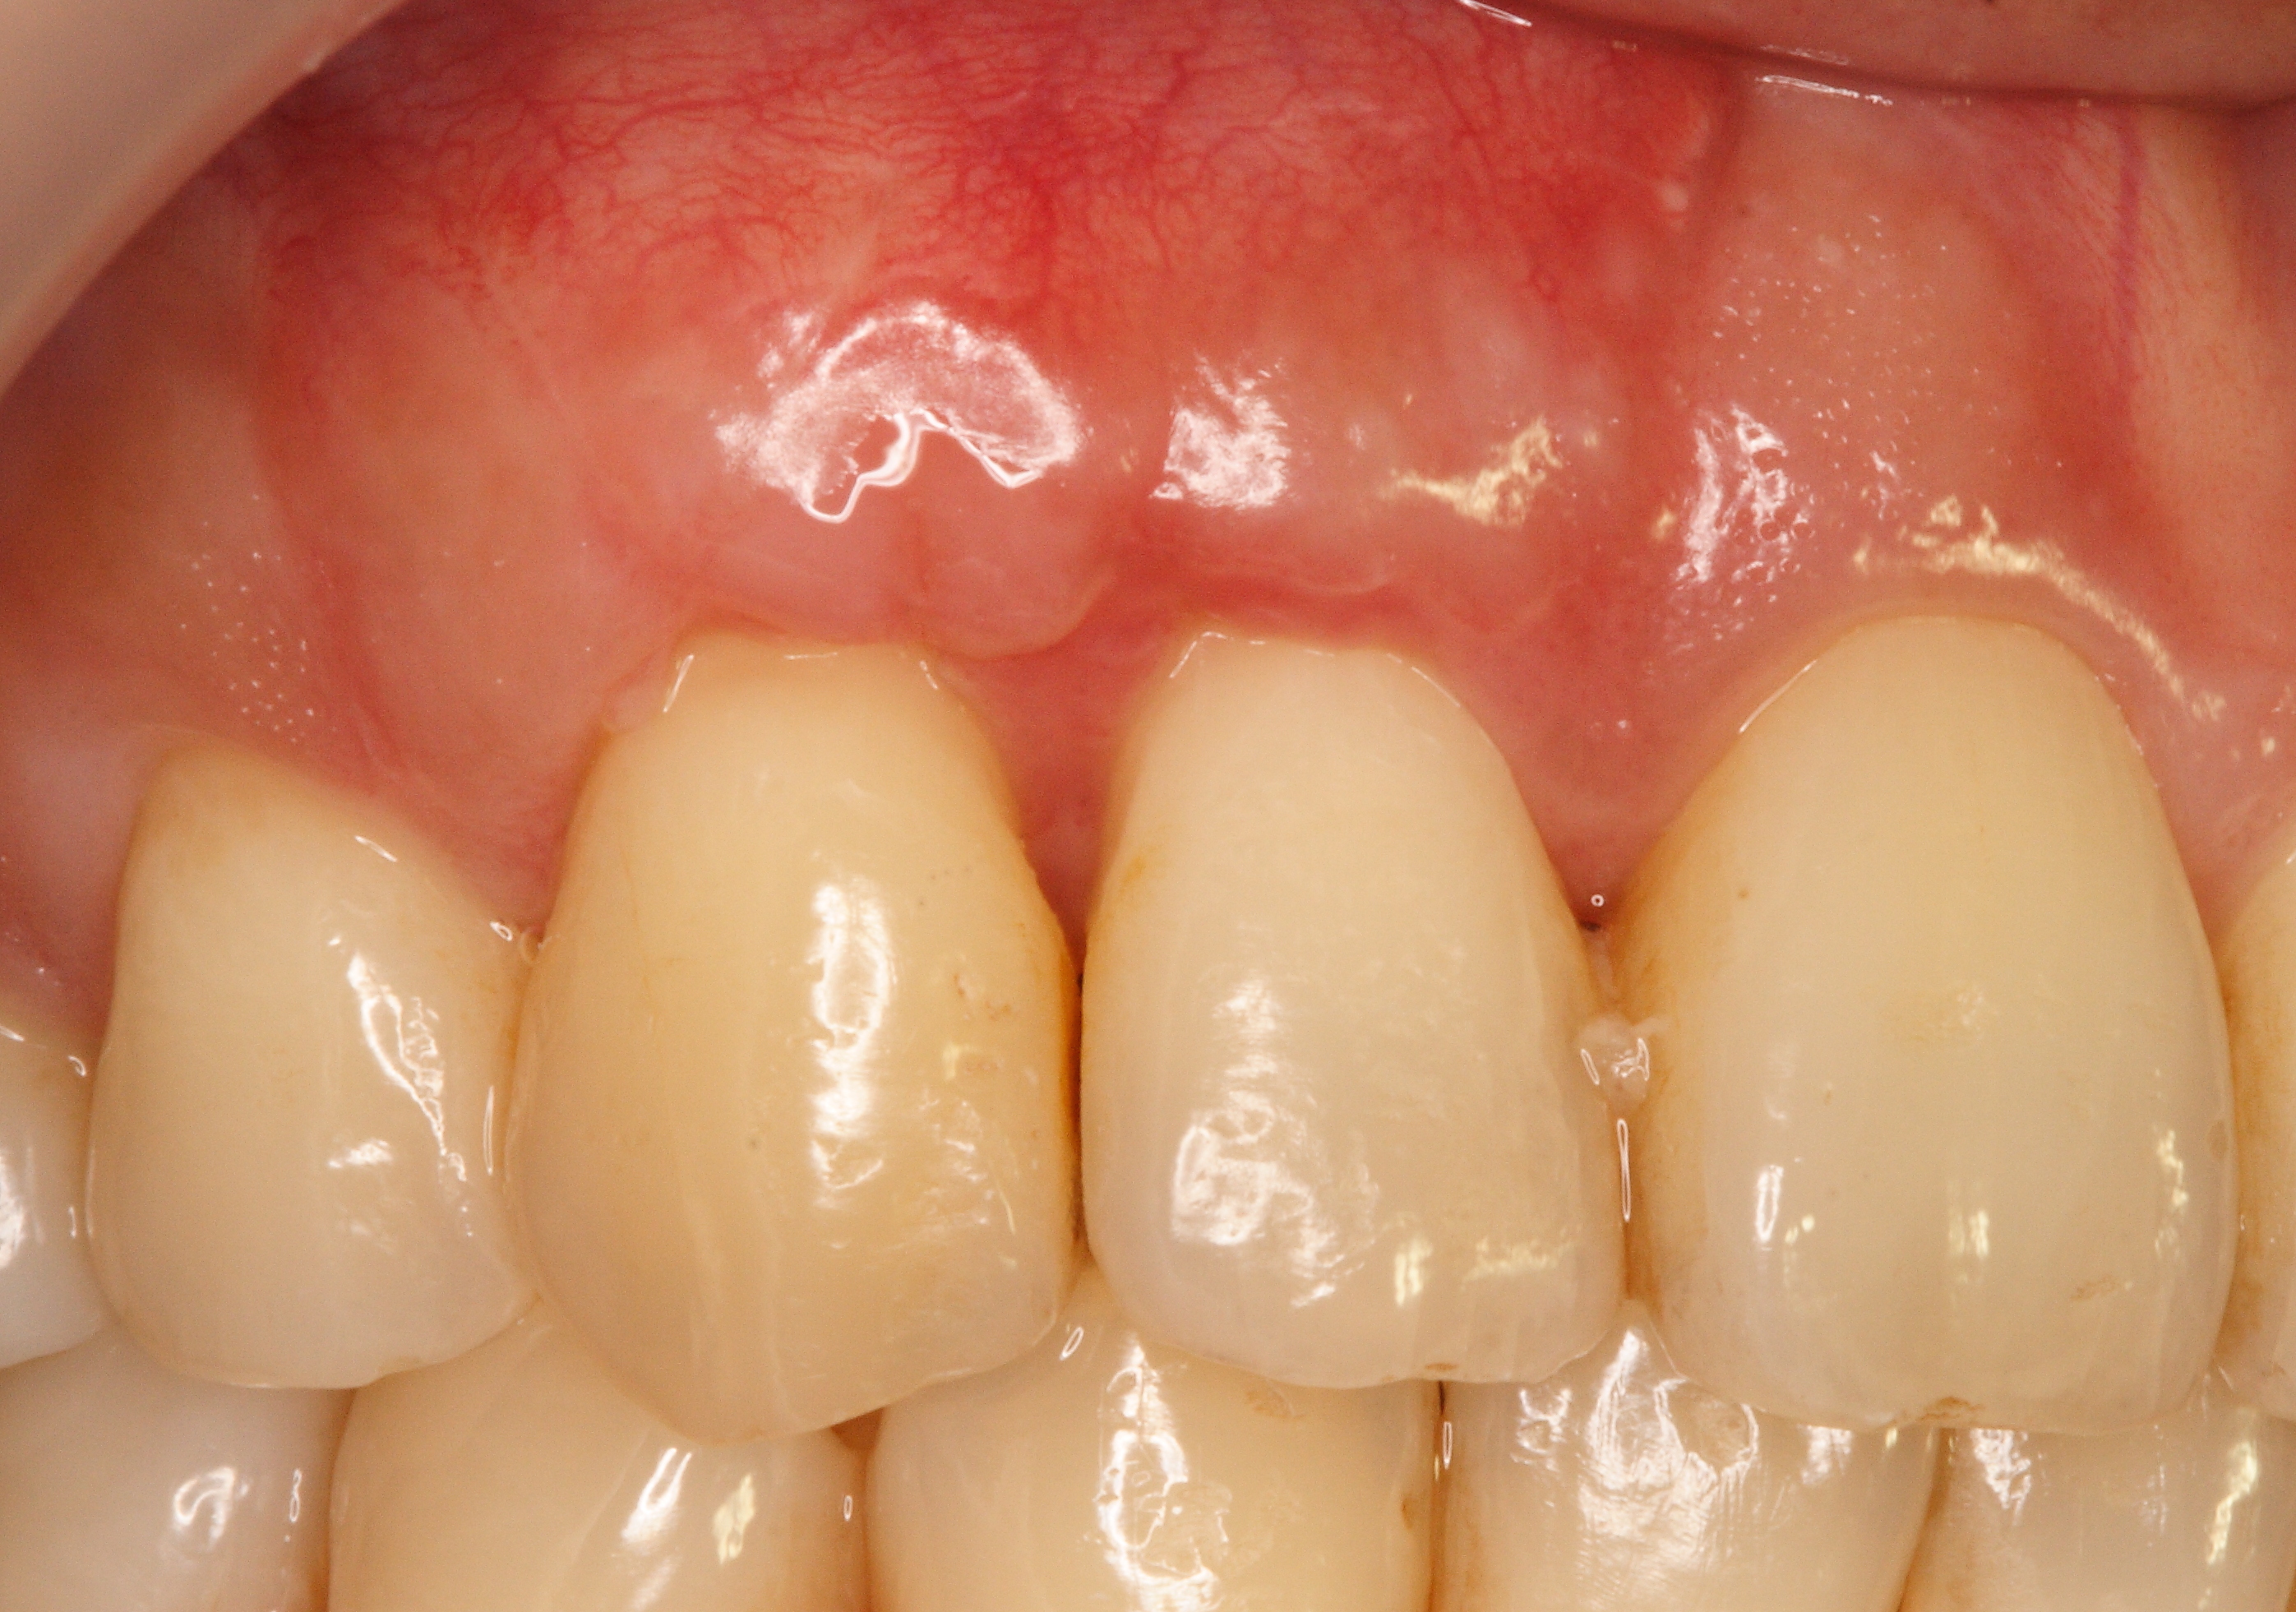 術後：原先暴露的牙根重新被牙肉覆蓋，牙齦明顯增厚，可避免日後再度萎縮。 (案例照片由陳智龍醫師提供).JPG